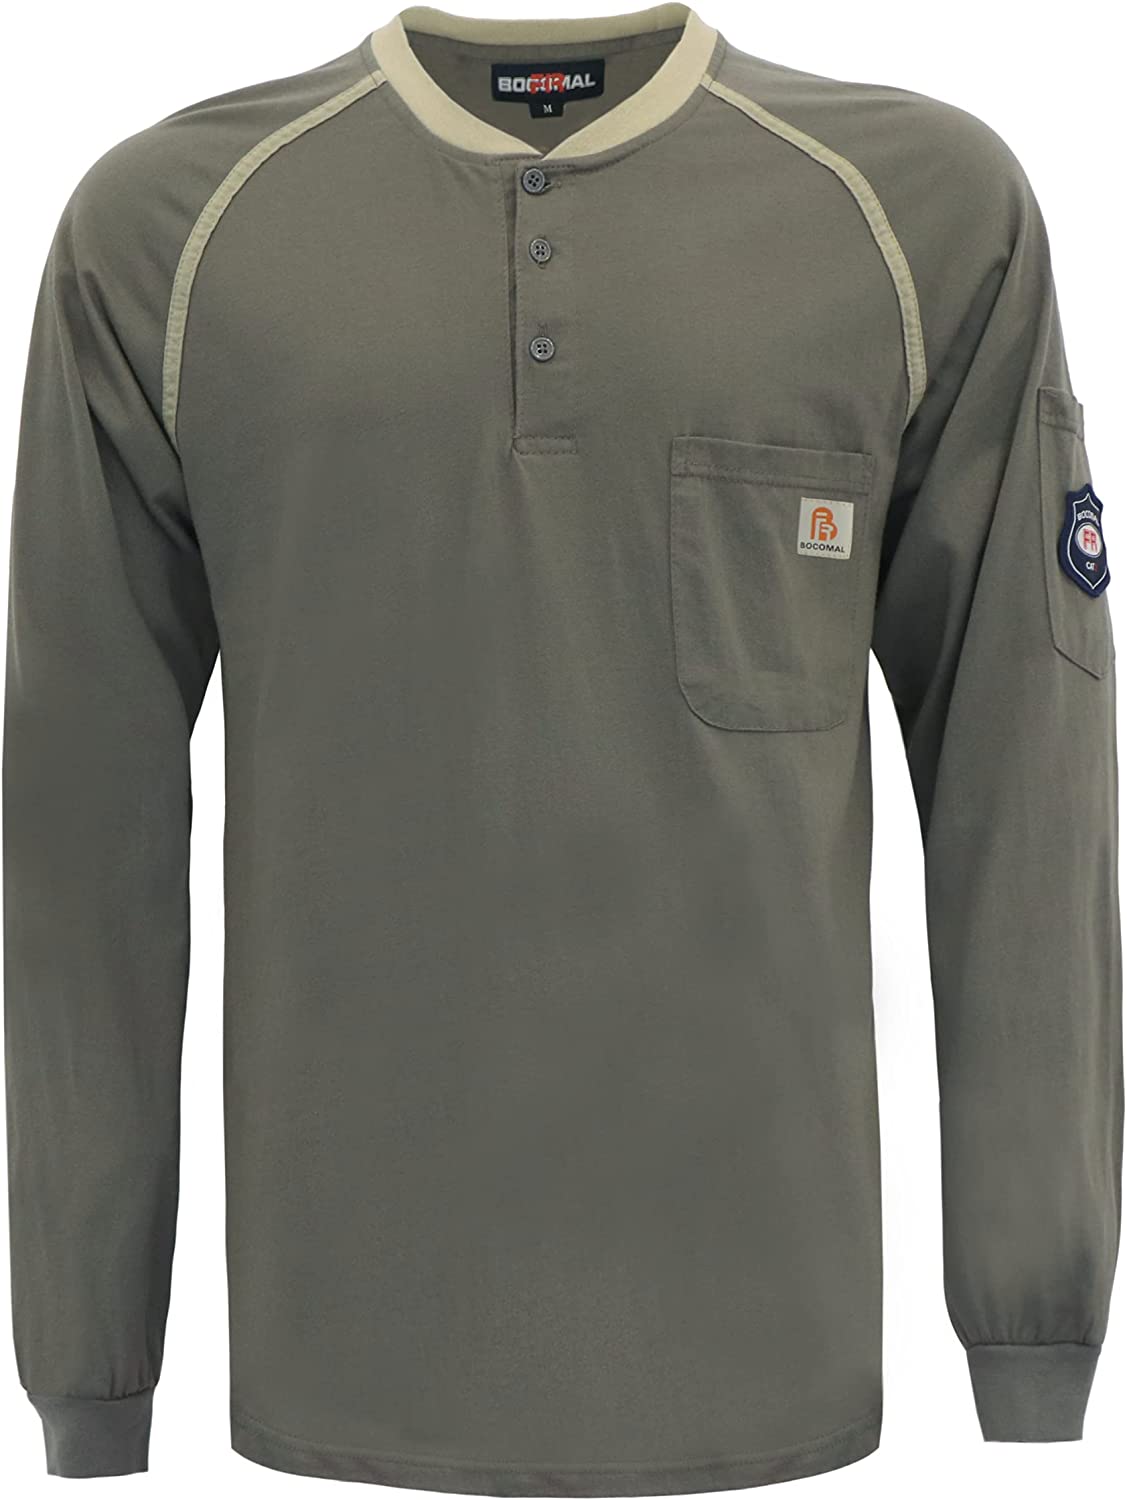 Shirts 5.5oz Light Weight for Summer Henley Shirts Flame Resistant/Fire Retardant Shirt